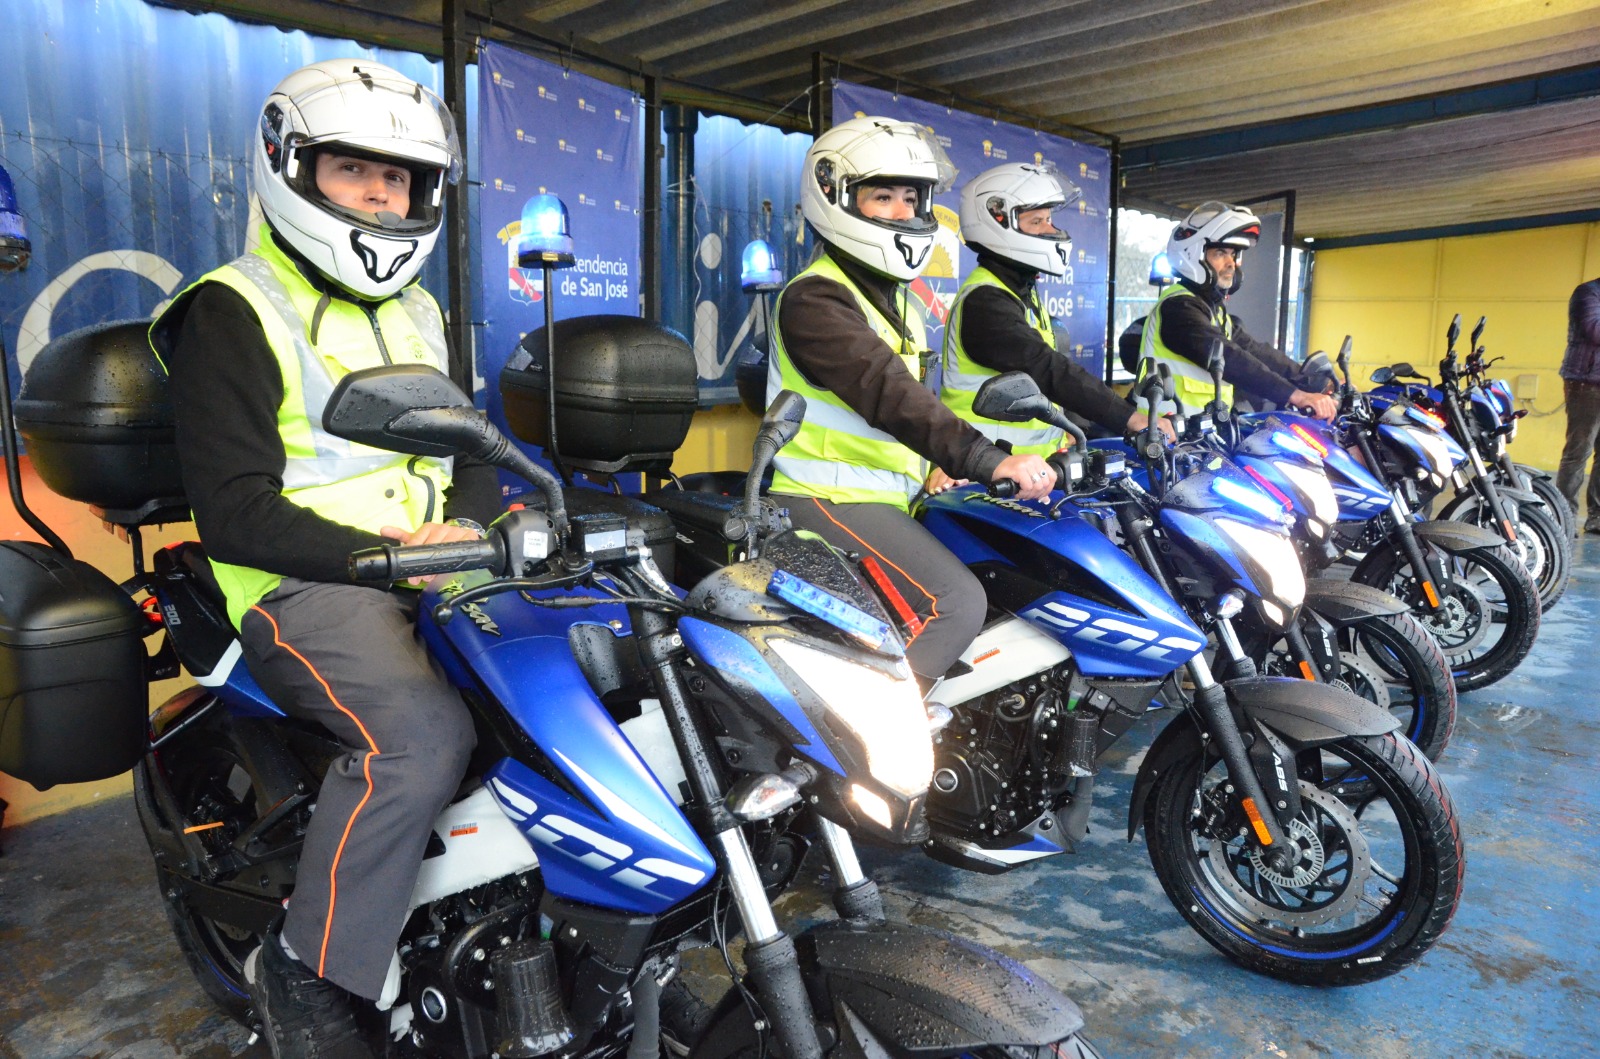 La Intendencia de San José incorporó seis motos nuevas para los inspectores de tránsito